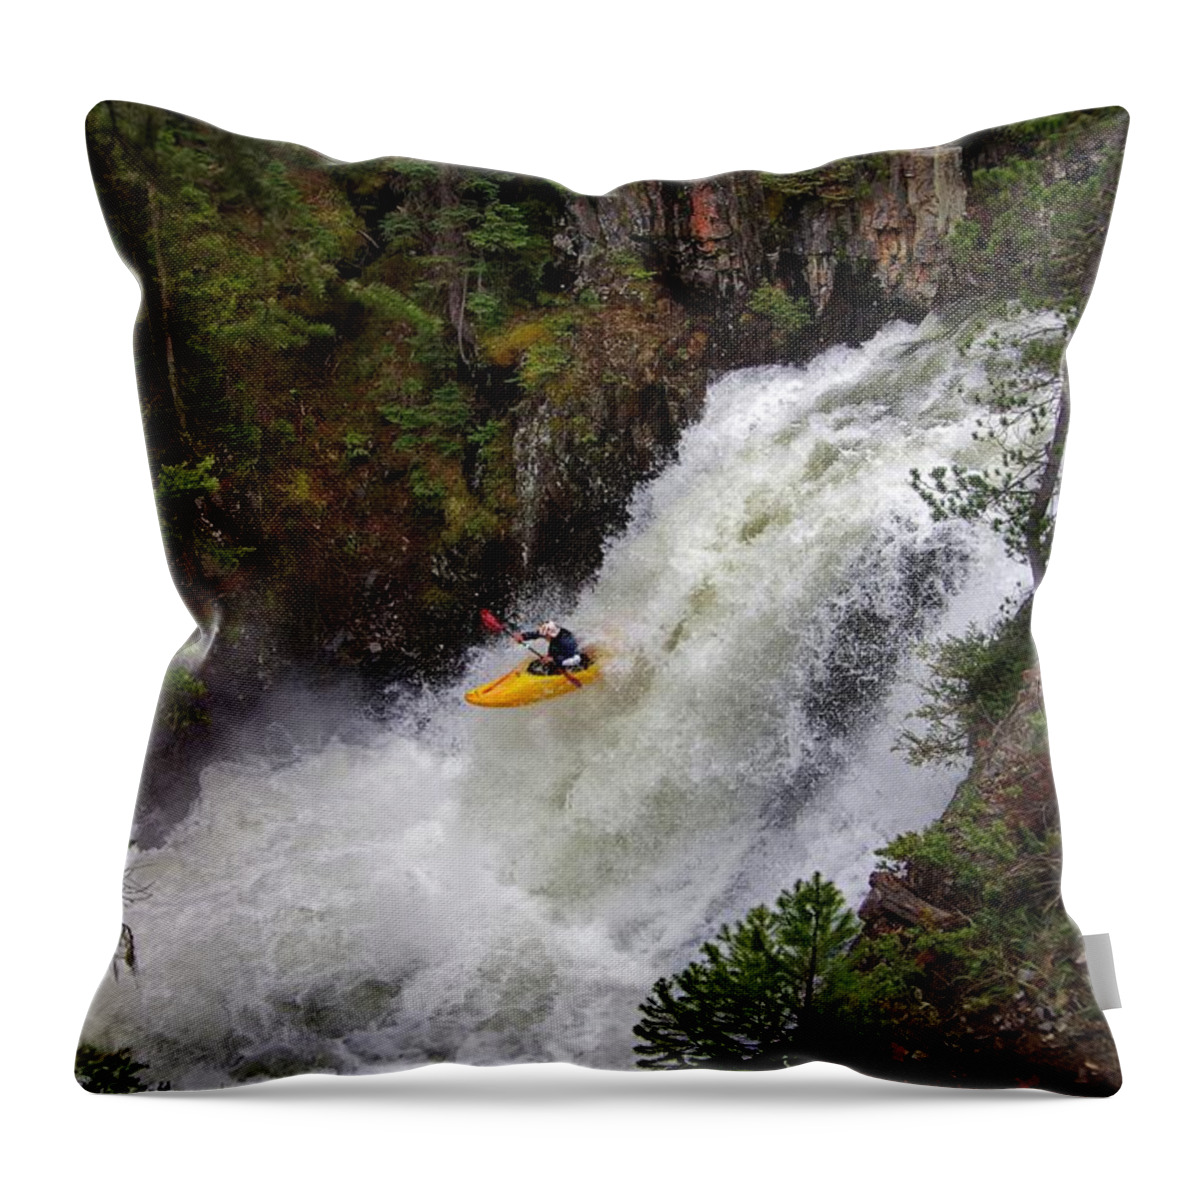 Kayaking Throw Pillow featuring the photograph Awaiting Impact by Matt Helm